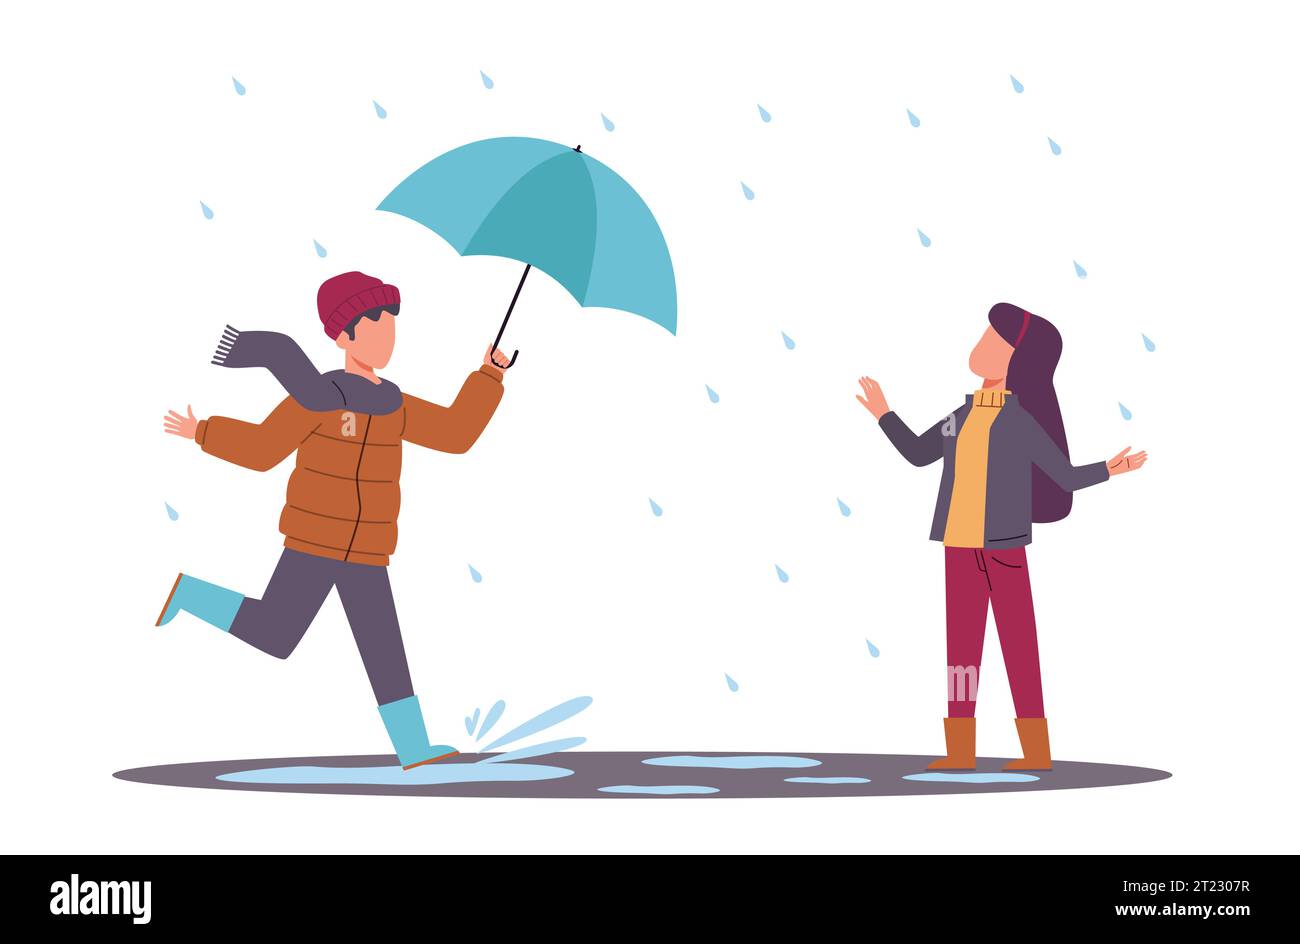 Junge, der Regenschirm für Mädchen im Regen trägt. Ein nettes Kind mit guten Manieren bietet Hilfe an. Kinder in warmen Herbstkleidung, die auf Pfützen laufen. Cartoon Flat Stock Vektor